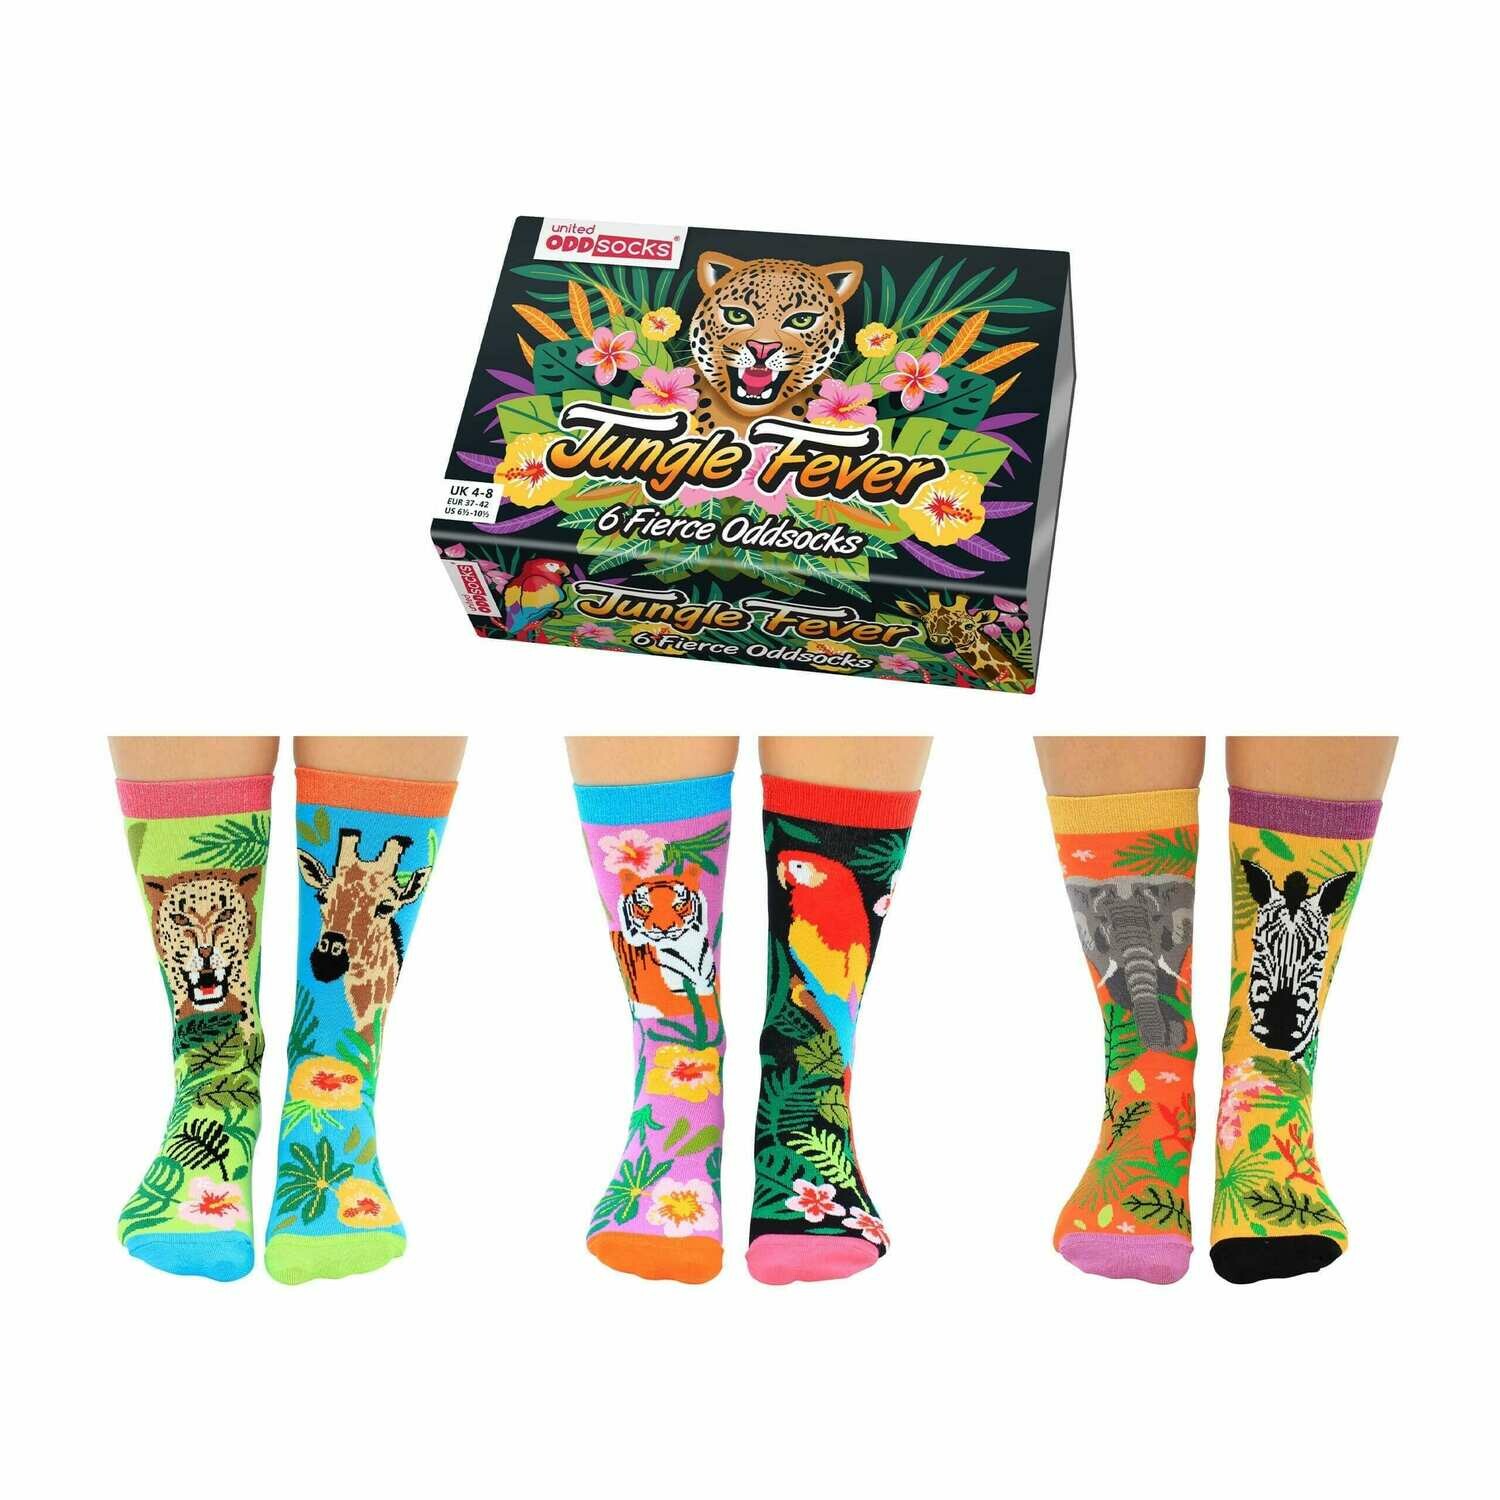 Ladies United Oddsocks Jungle Fever 6 Fierce Odd Socks Gift Boxed